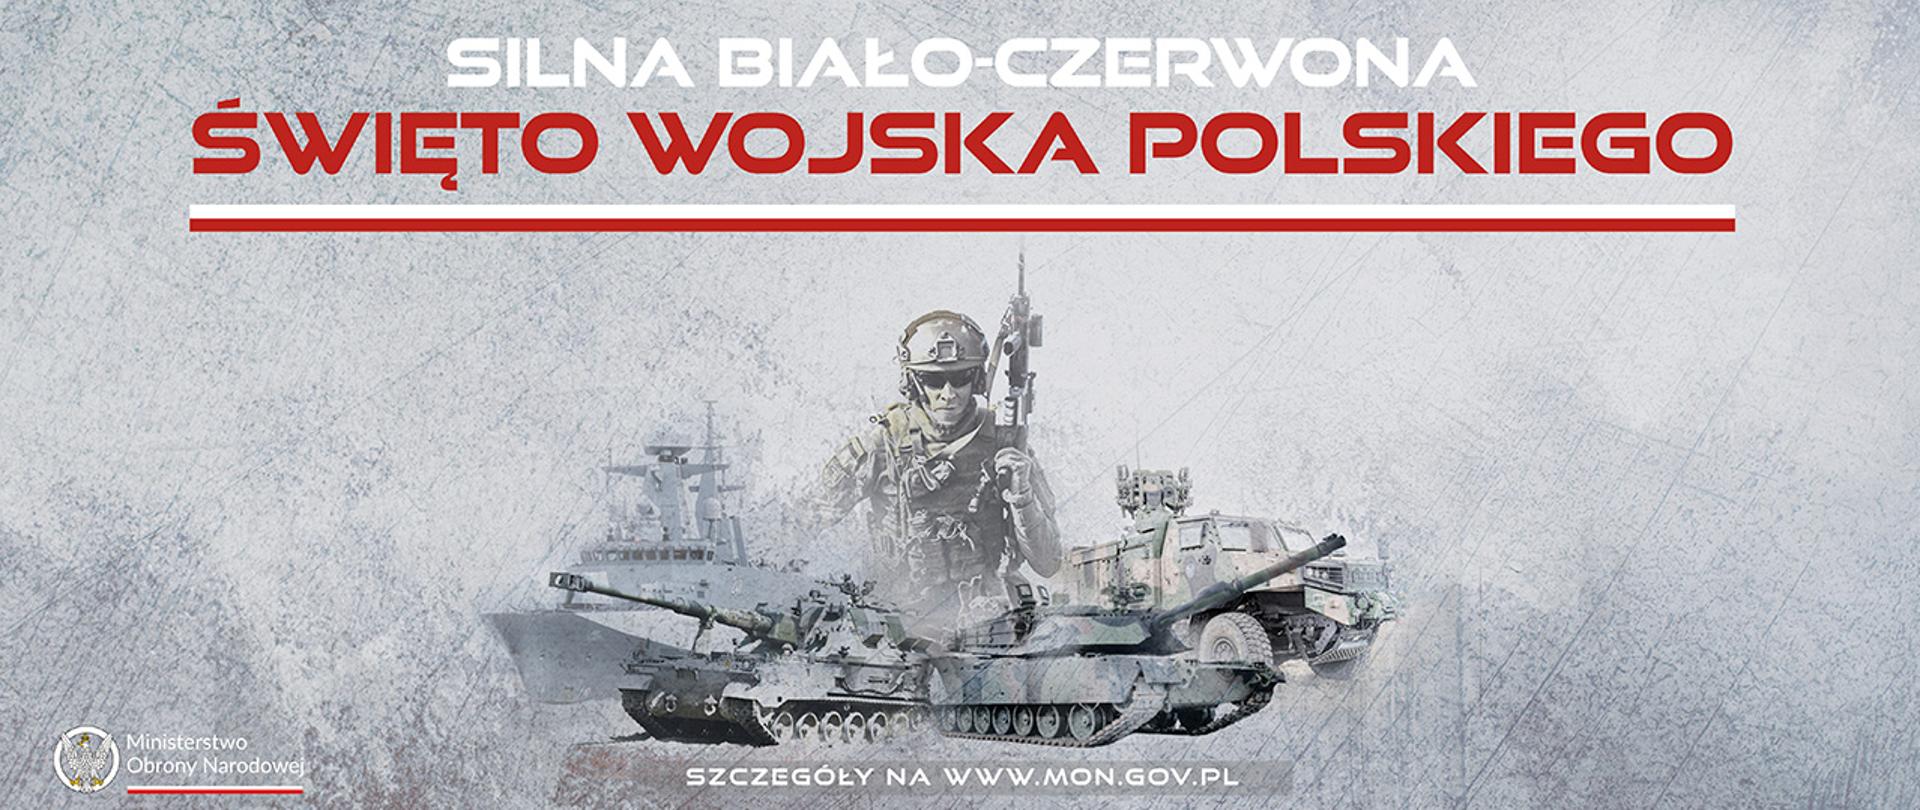 Tegoroczne obchody Święta Wojska Polskiego odbędą się pod hasłem SILNA BIAŁO-CZERWONA